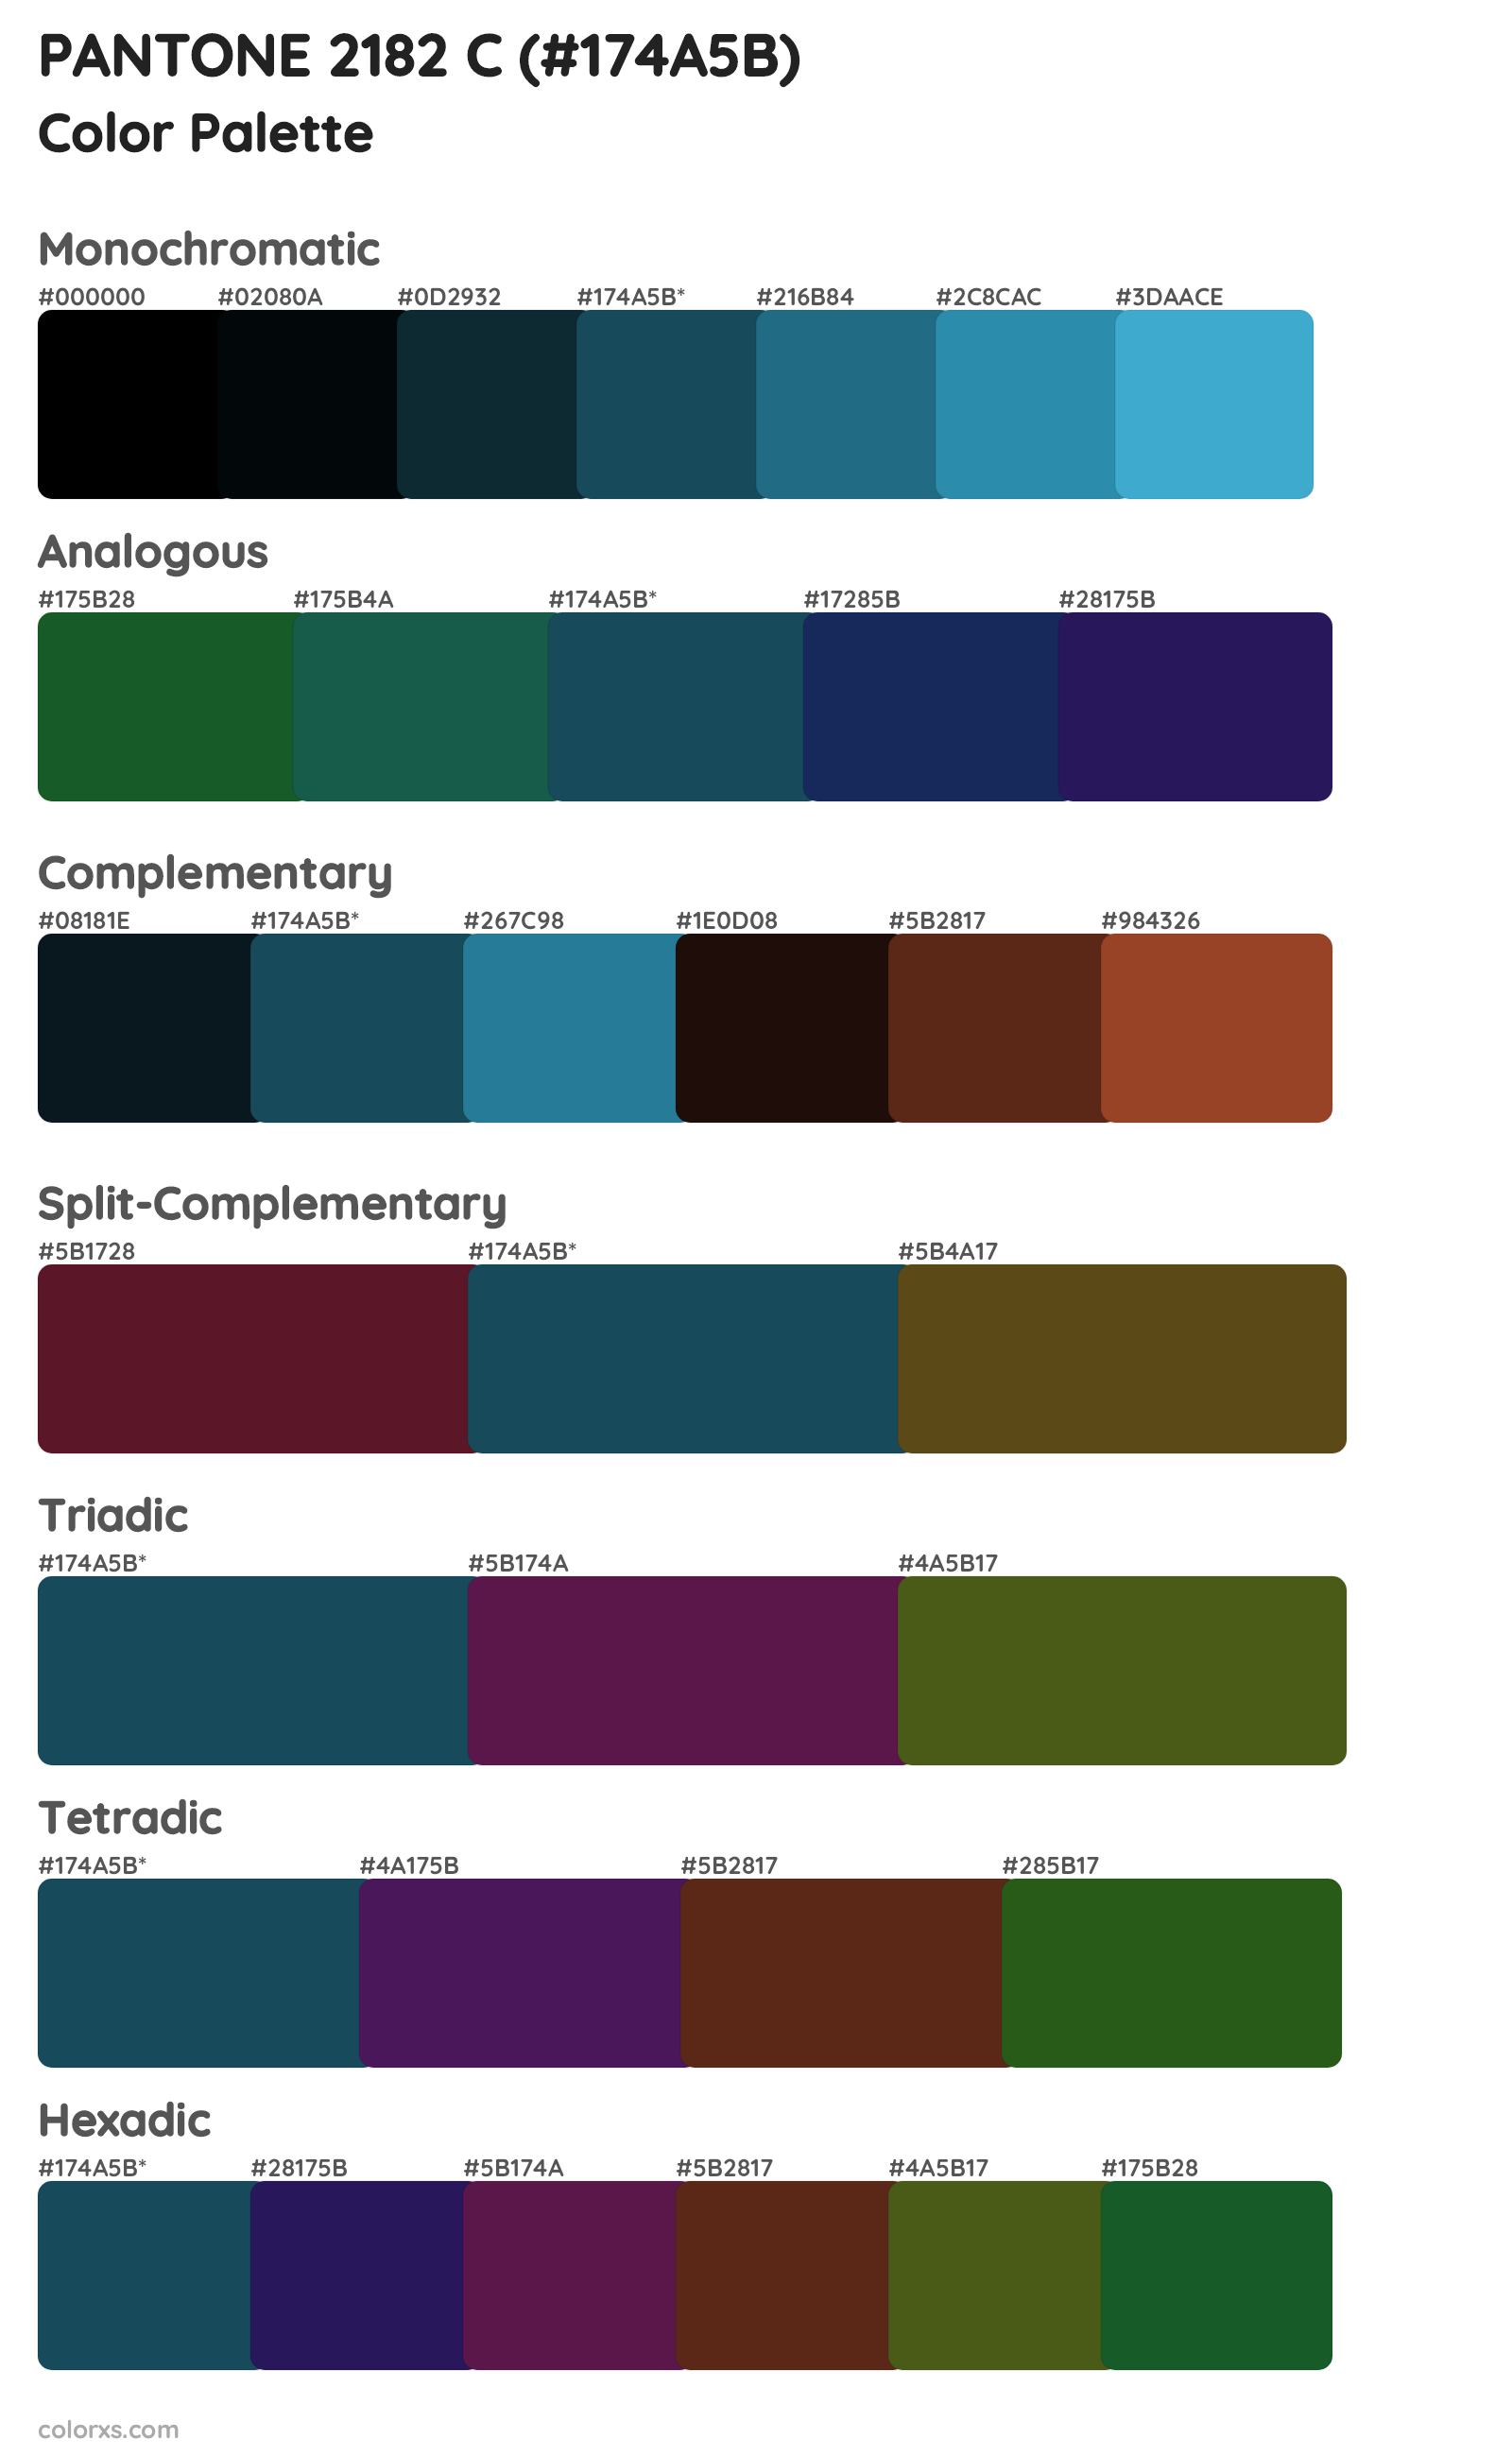 PANTONE 2182 C Color Scheme Palettes